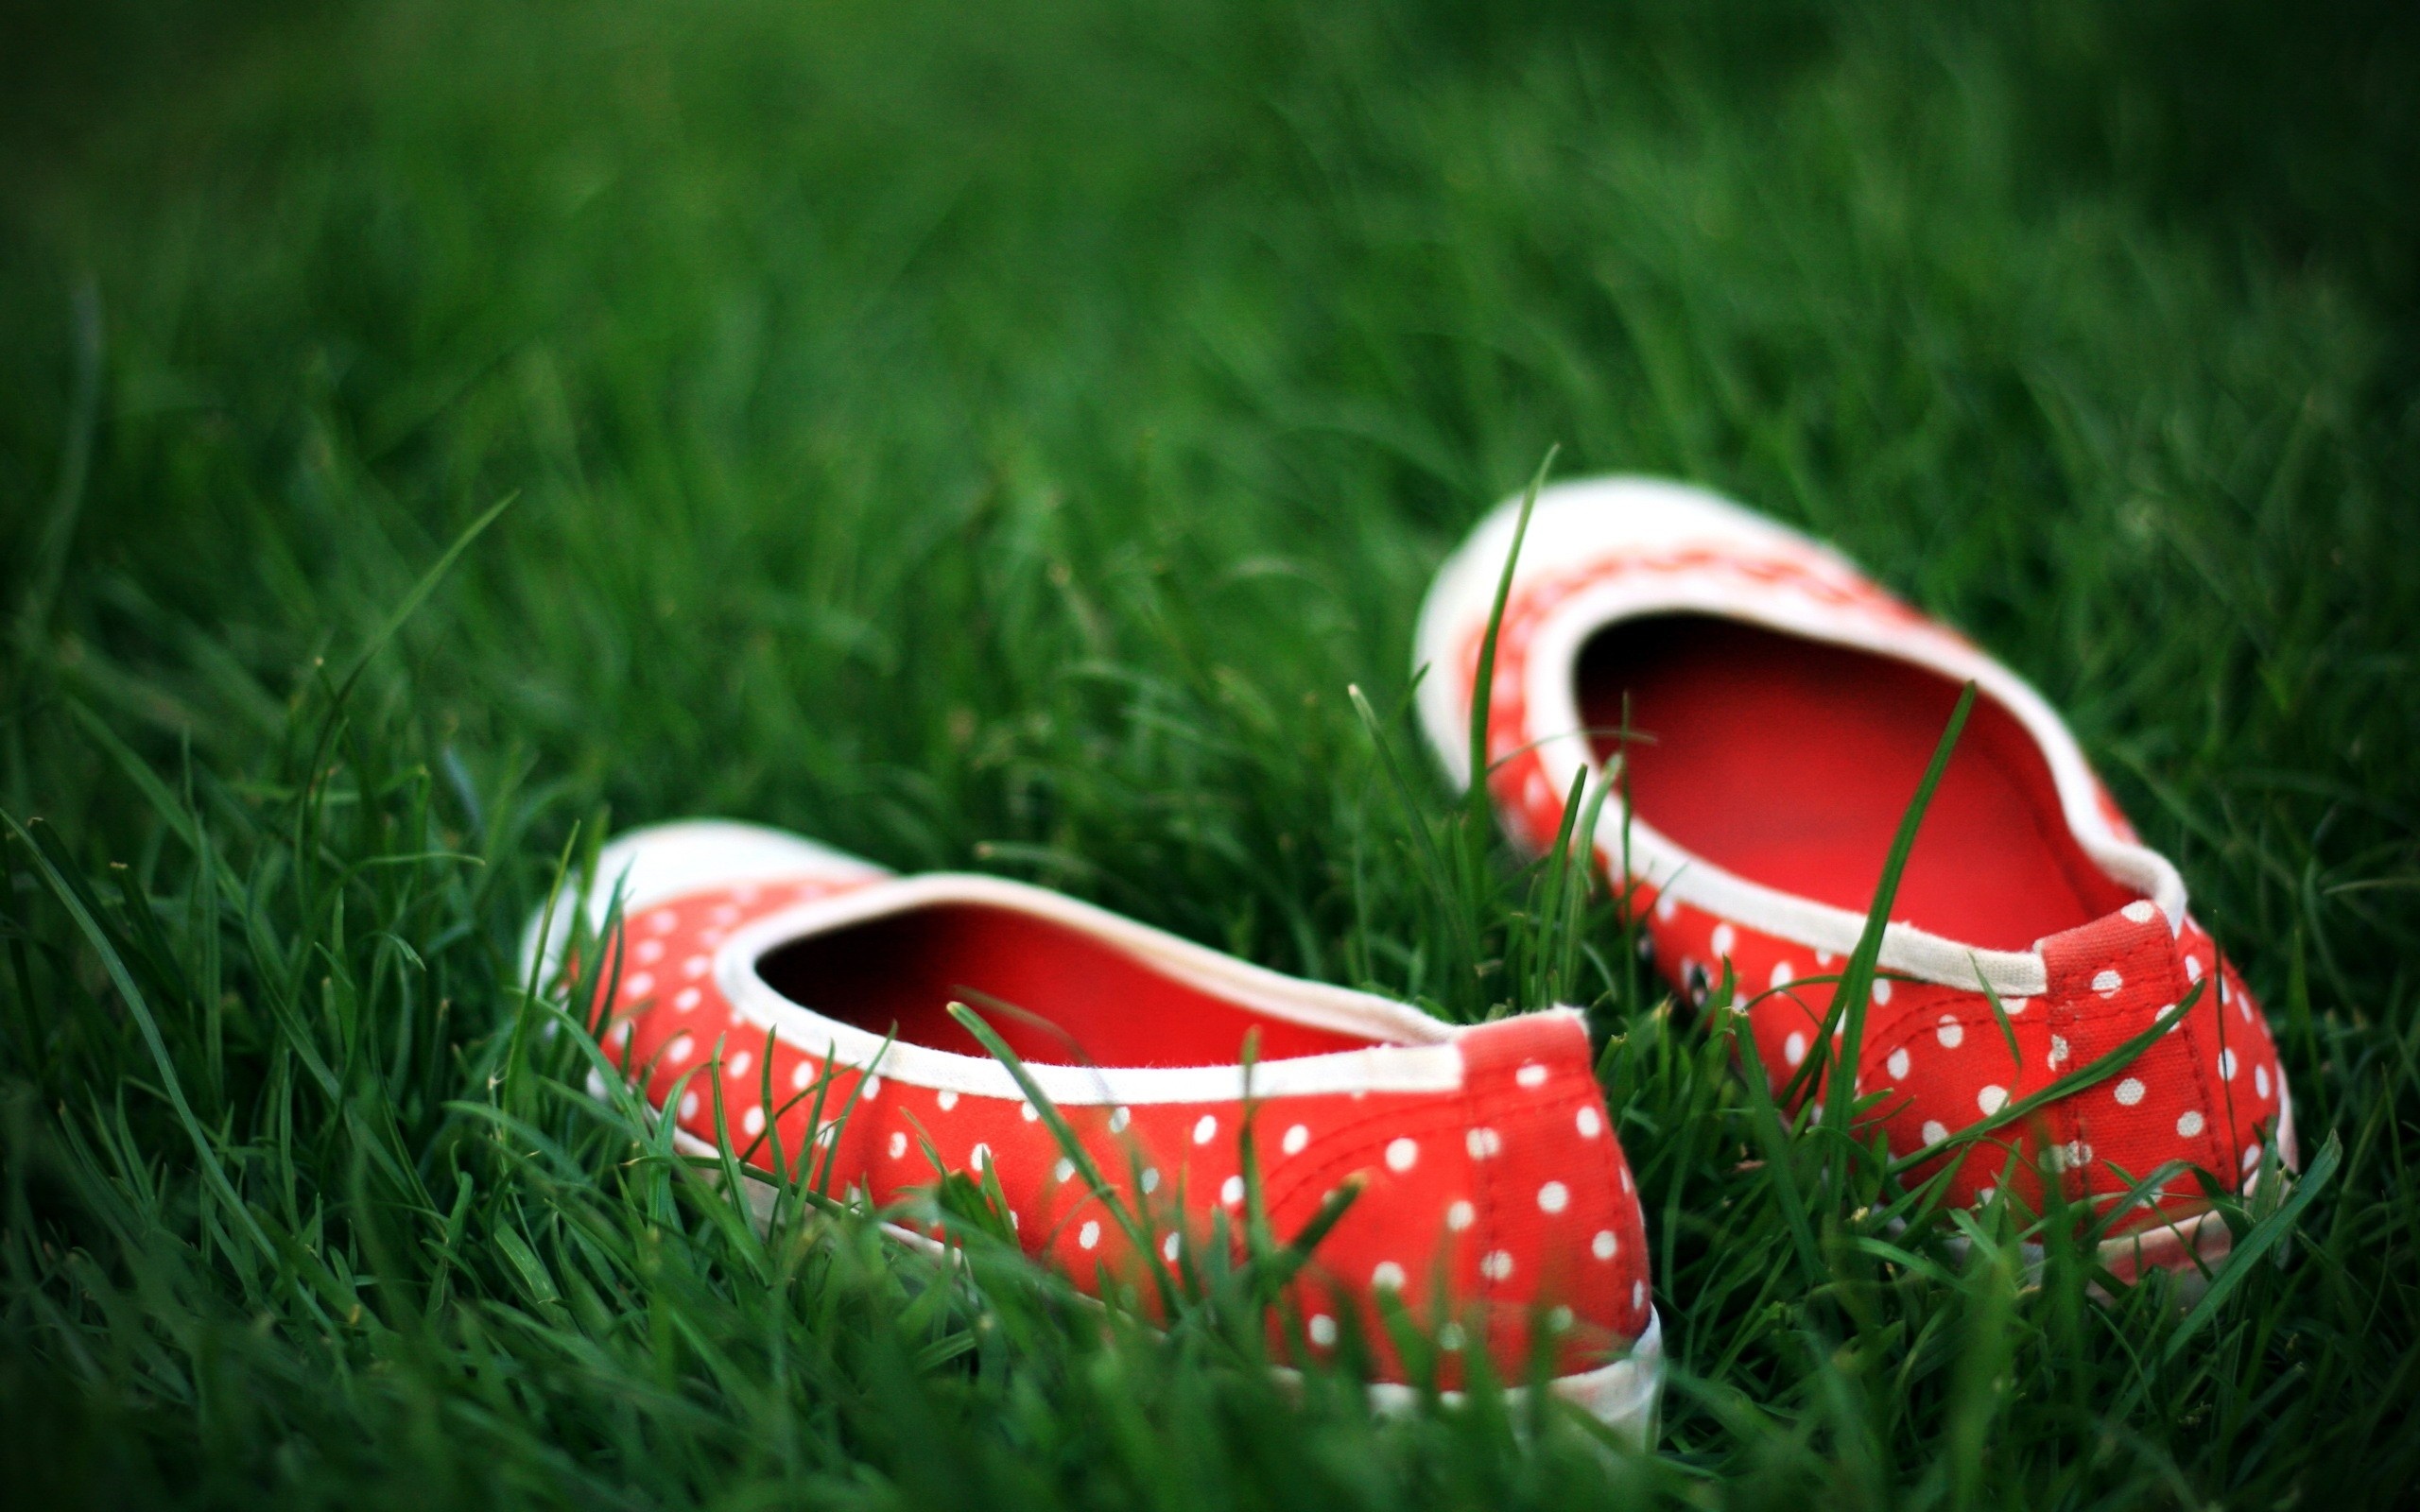 Ботинки на траве